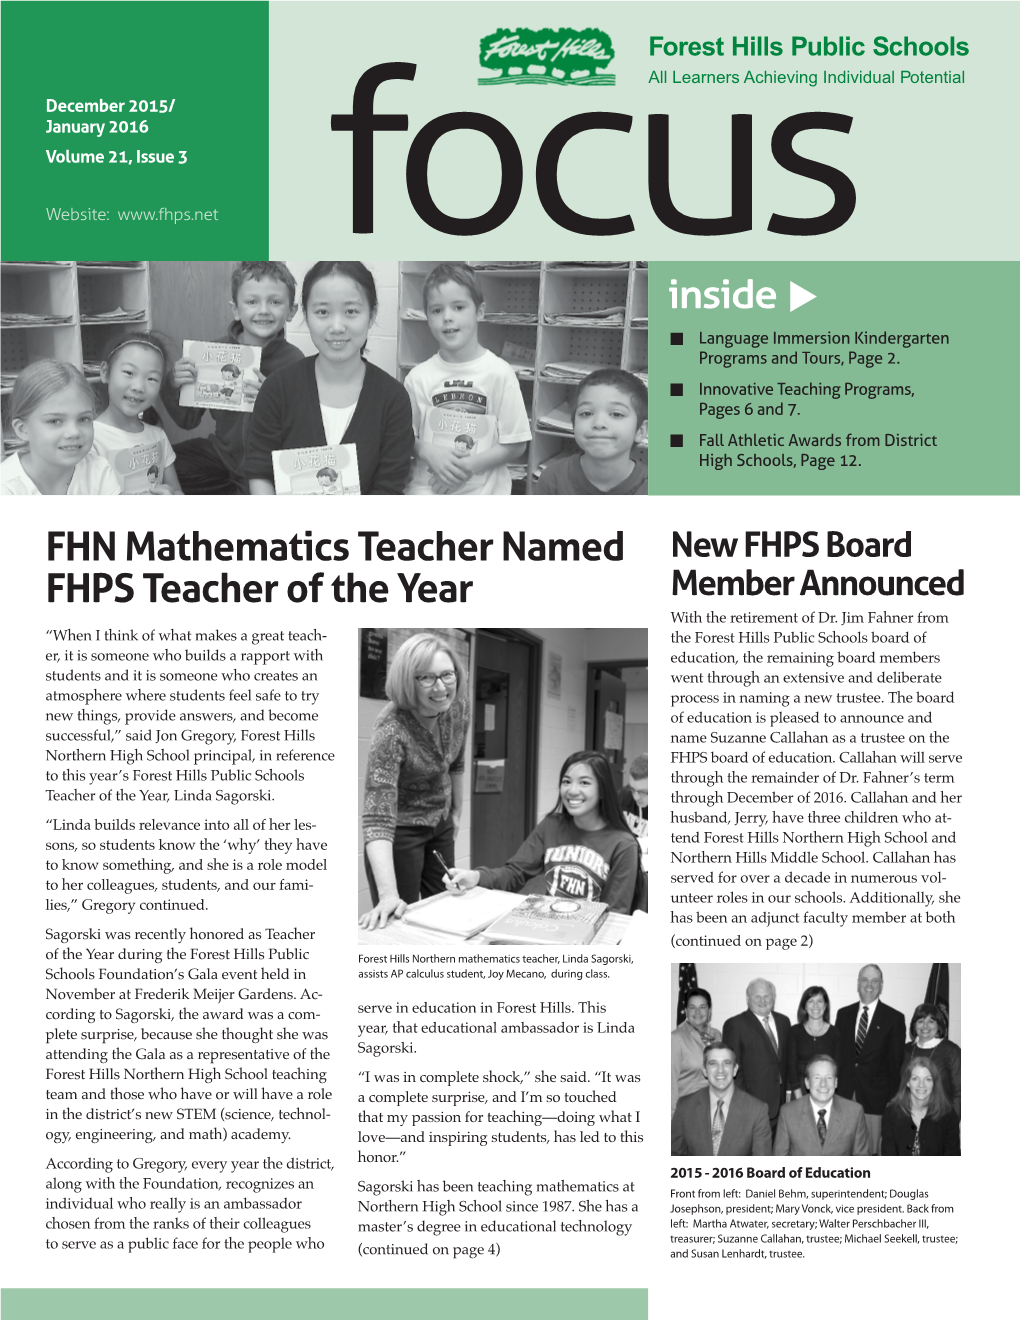 FHN Mathematics Teacher Named FHPS Teacher